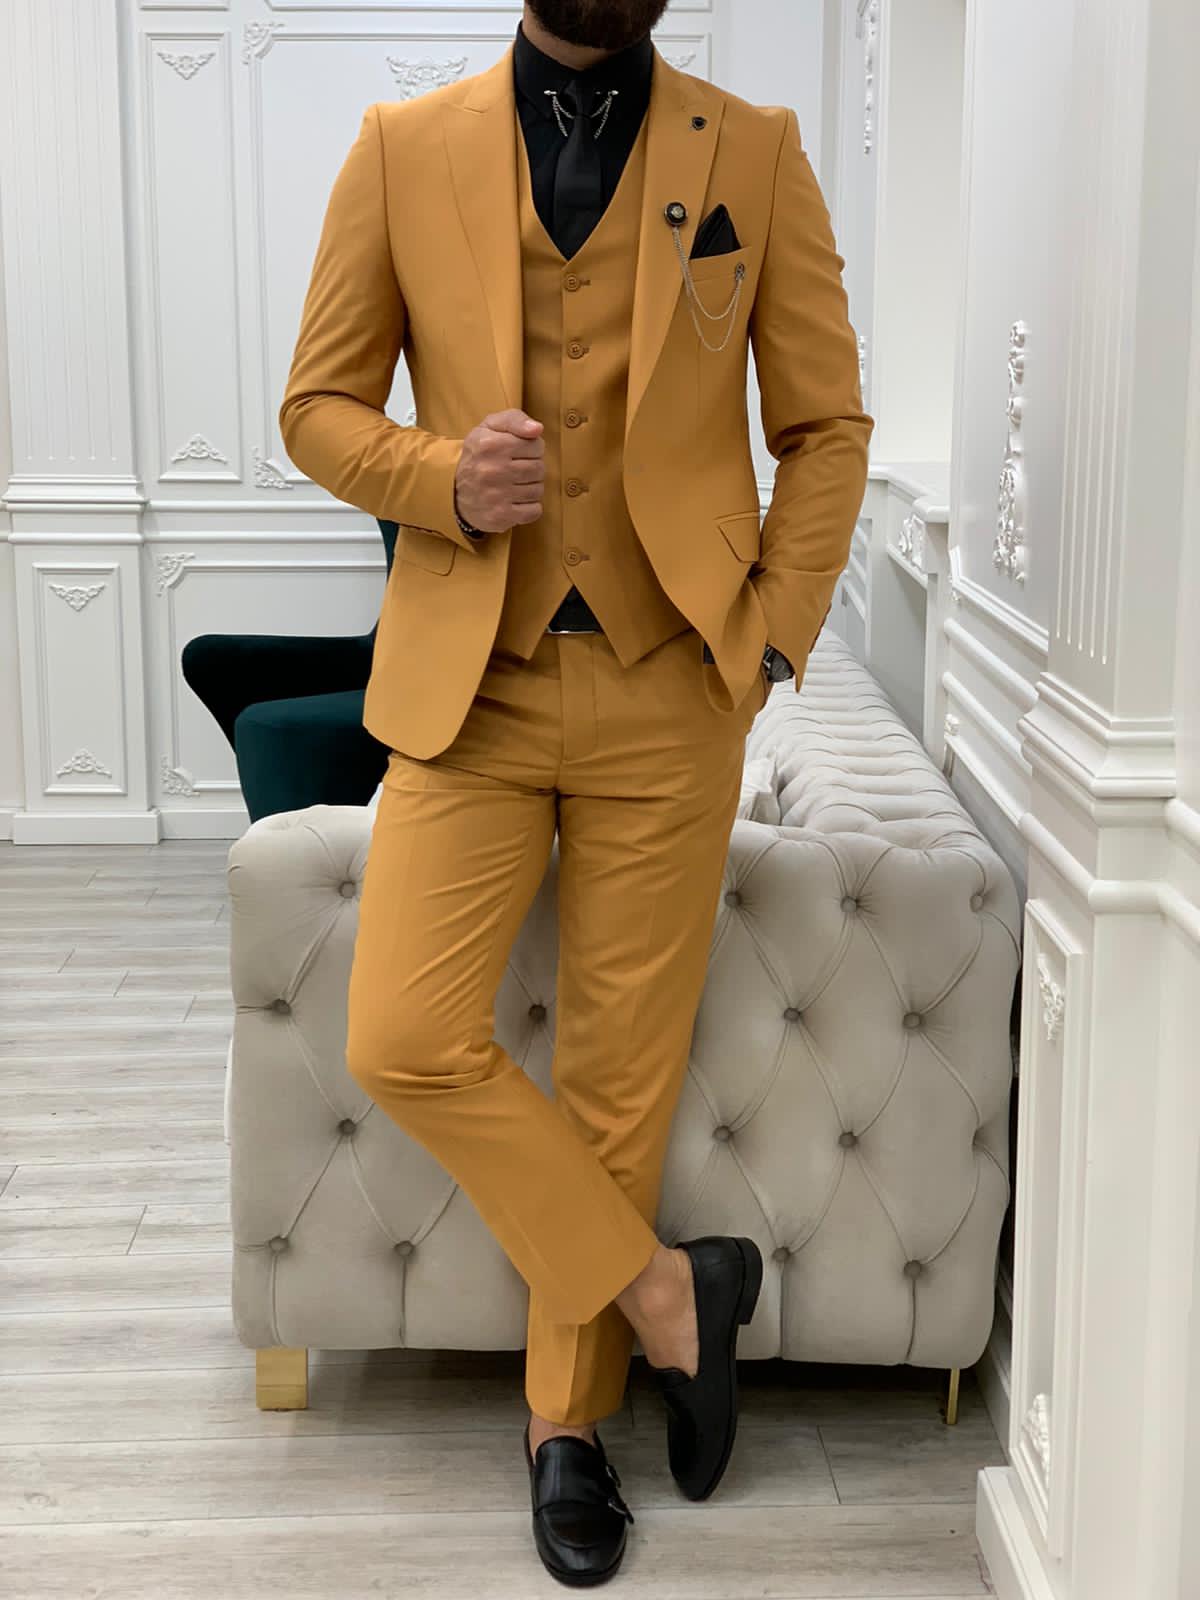 Colorada Slim Fit Mustard Suit - Hollo Men